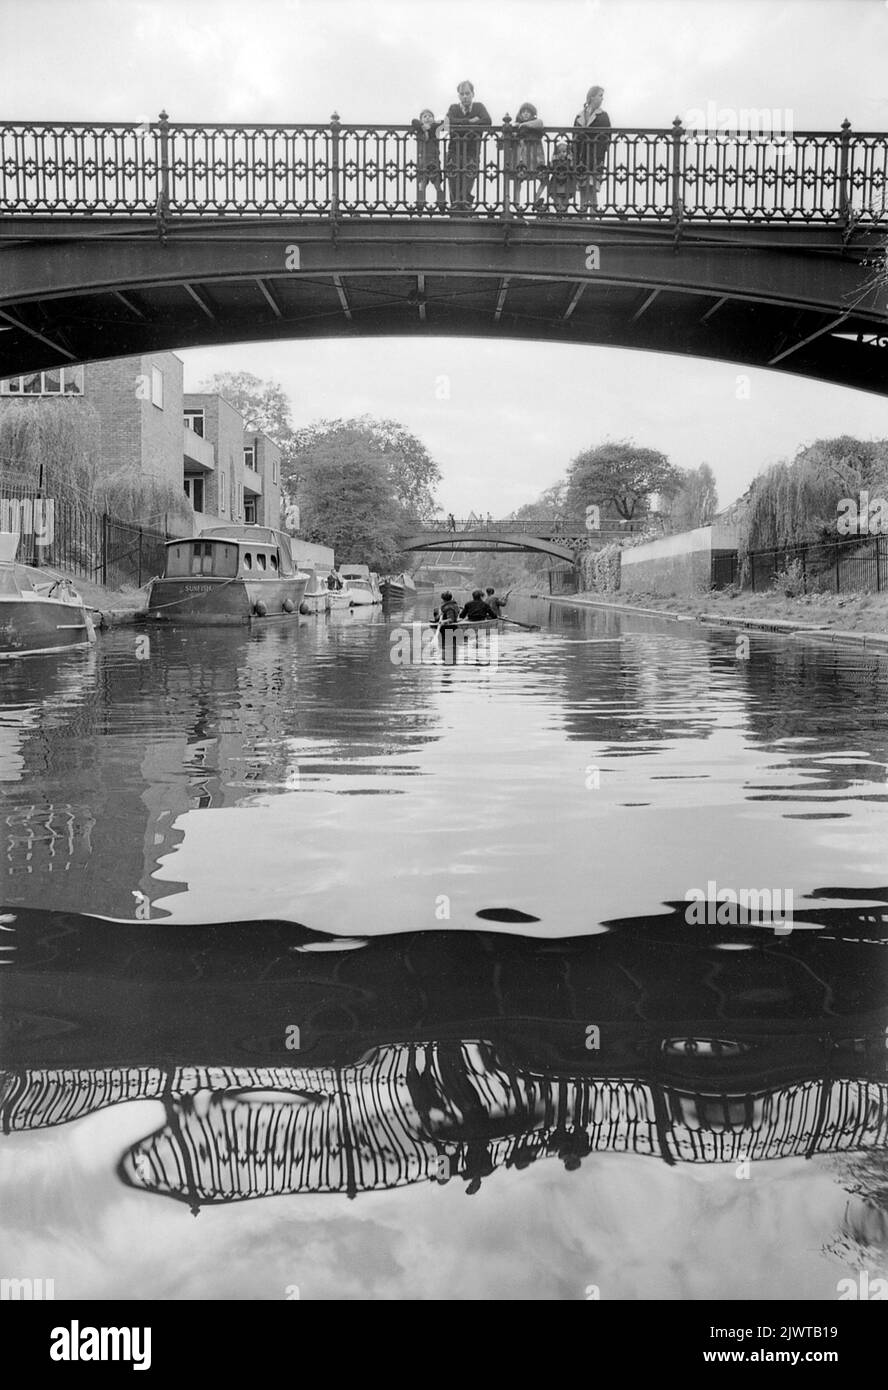 Londres, Angleterre, vers 1967. Une famille qui se tient sur la large passerelle au-dessus du canal Regent’ à Cumberland Basin observe des garçons du Pirates Club pagayer un bateau en dessous d’eux. Le Snowdon Aviary du zoo de Londres se trouve à l'avant de l'hôtel, à Regent's Park. Le Piratess’ Club, un club de canotage pour enfants, a été créé en 1966 à Gilbey’s Wharf, sur le canal Regent's, près de Camden, à Londres. Leur pavillon était une ancienne barge et un certain nombre de petits bateaux et de canoës avaient été donnés pour les enfants. Banque D'Images